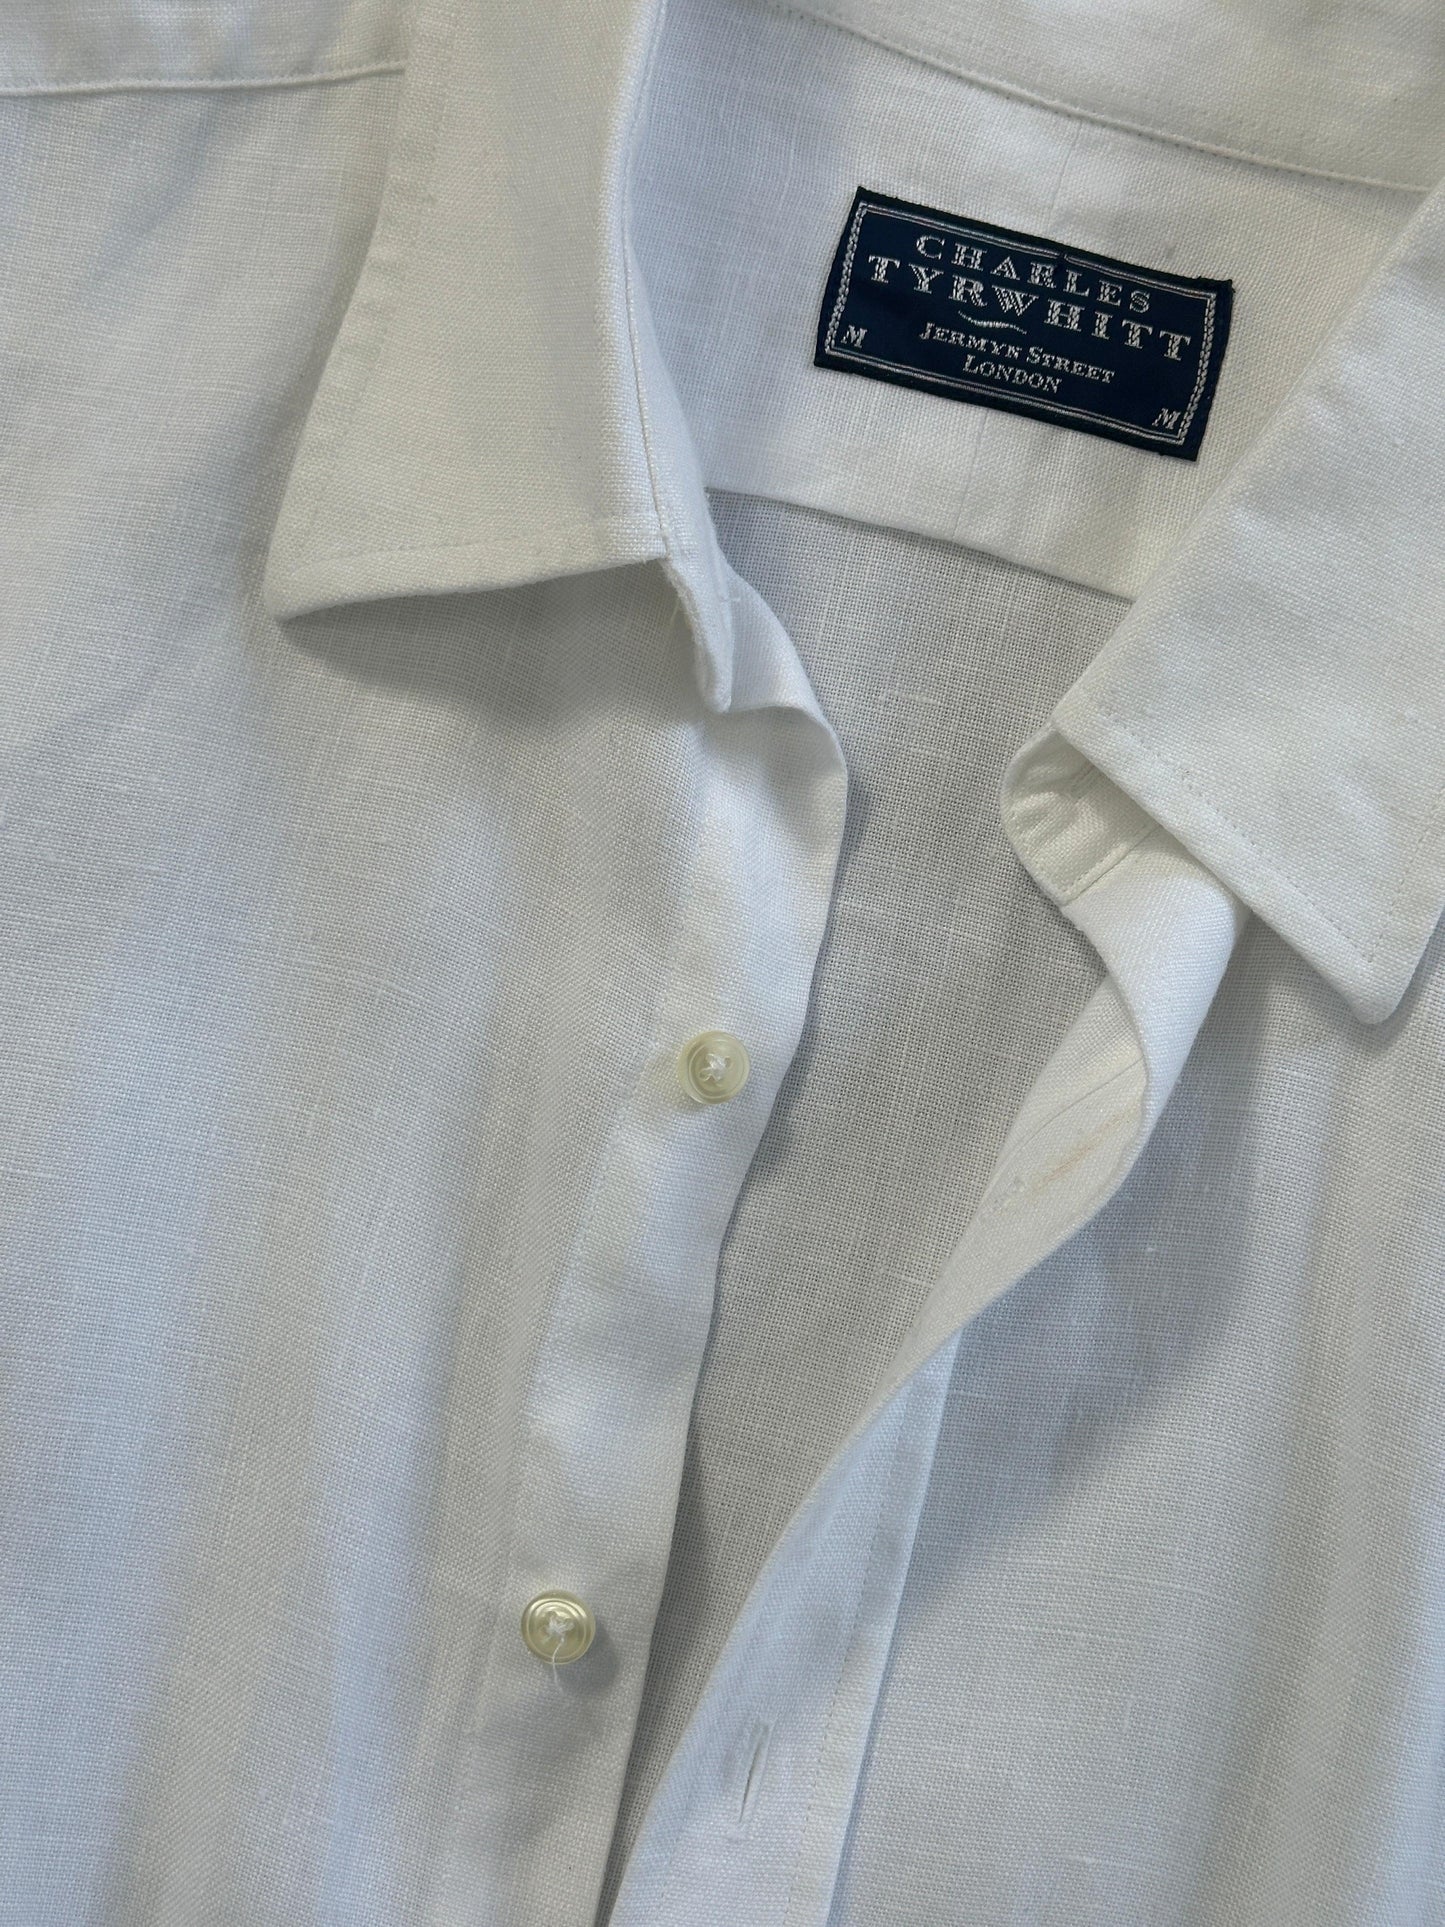 Vintage Pure Linen Shirt - XL/XXL - Known Source